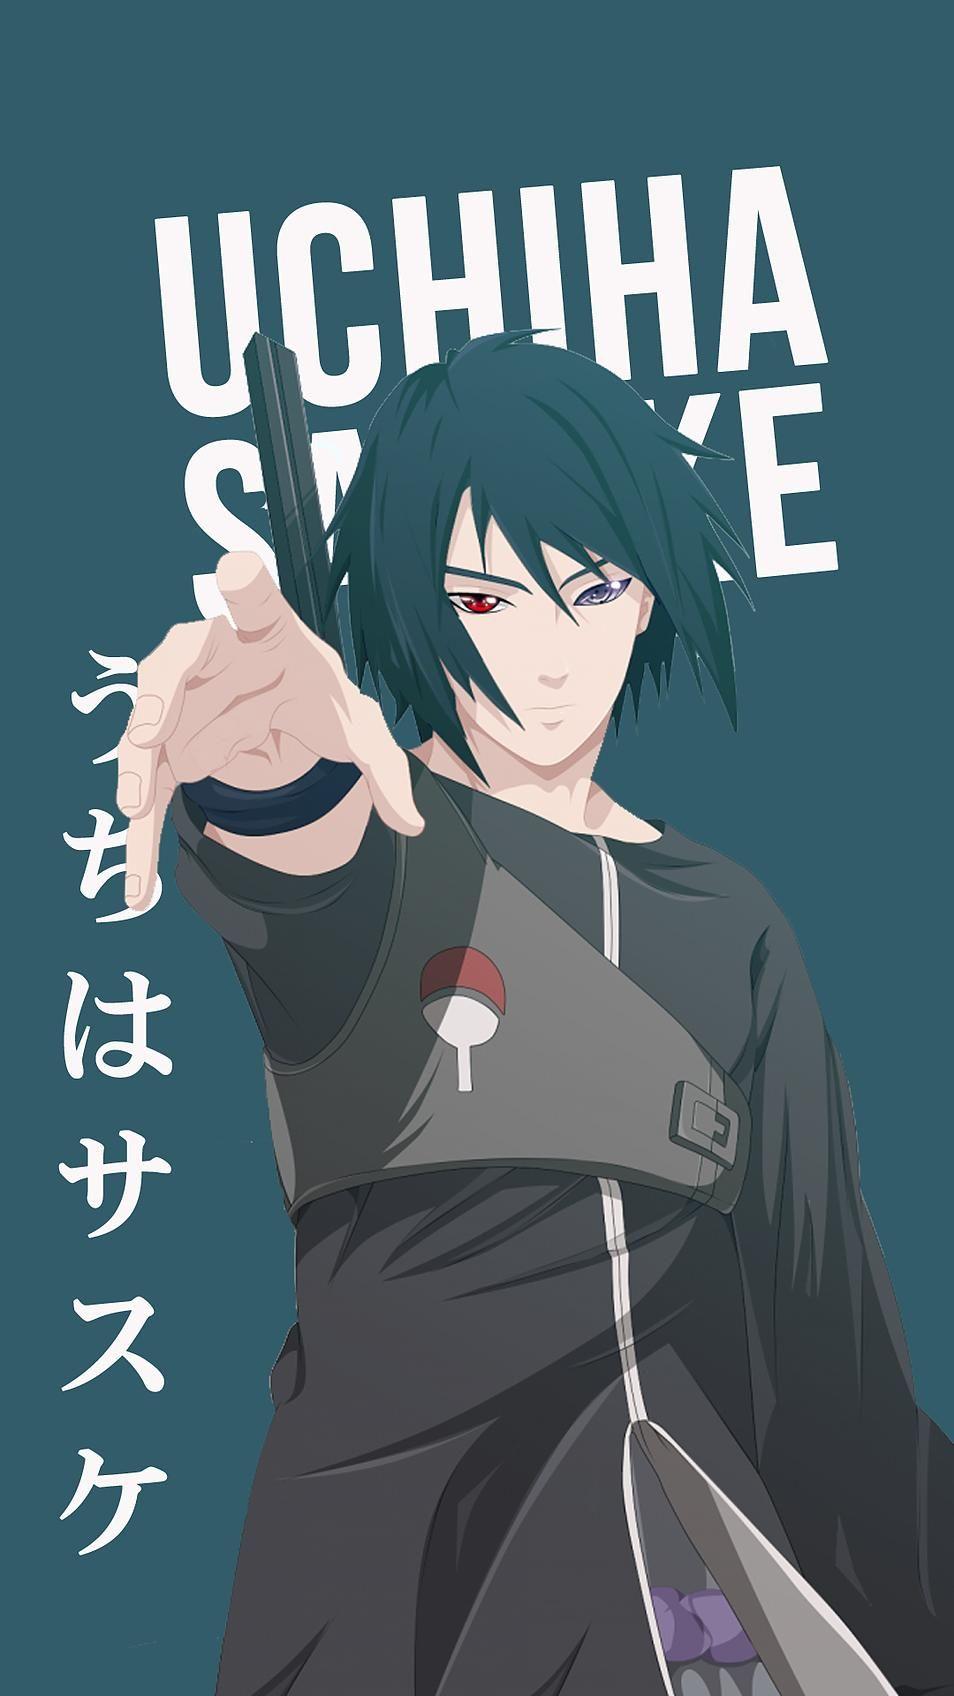 13+ Wallpaper Anime Sasuke Hd Android